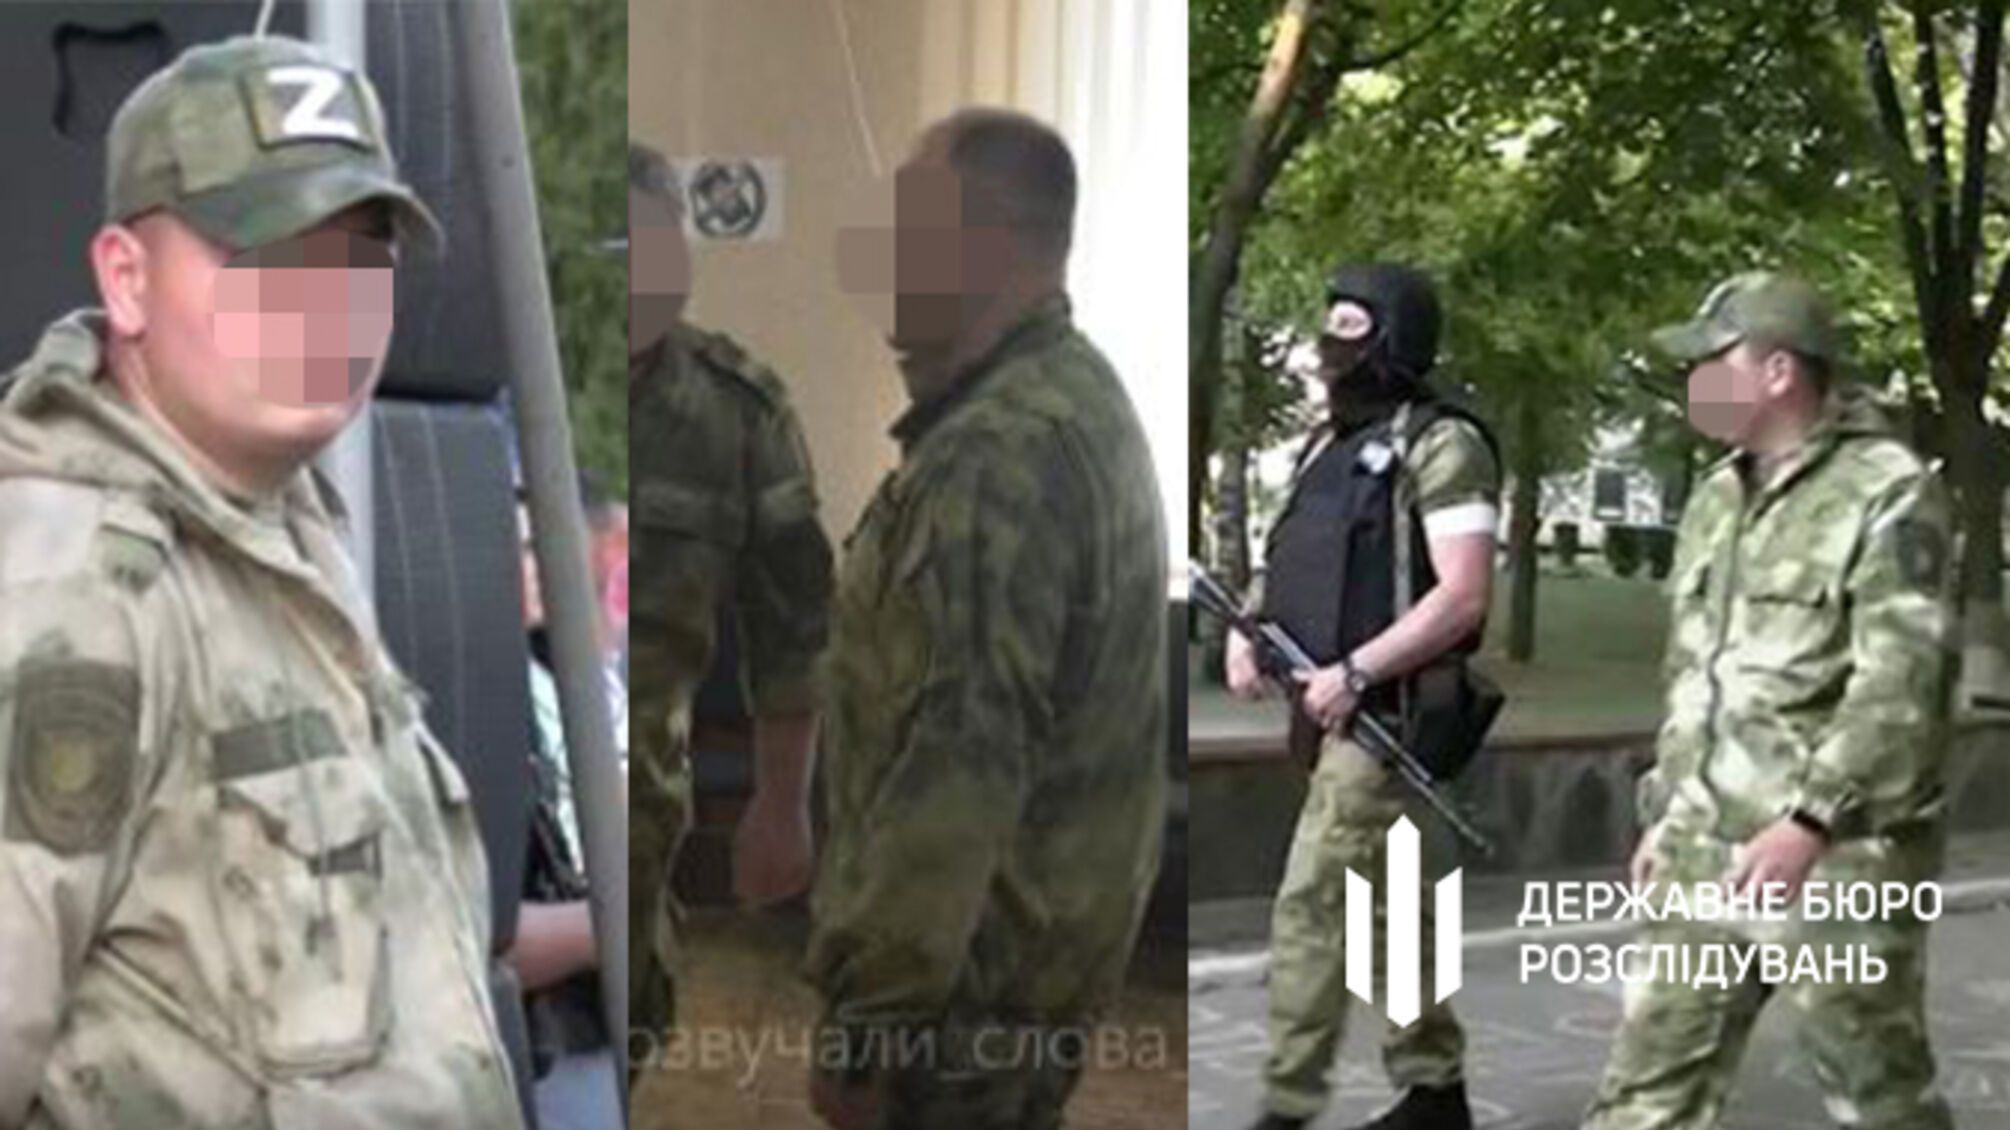 Пішли працювати на ворога: чотирьох правоохоронців з Луганщини будуть судити за держзраду (фото)